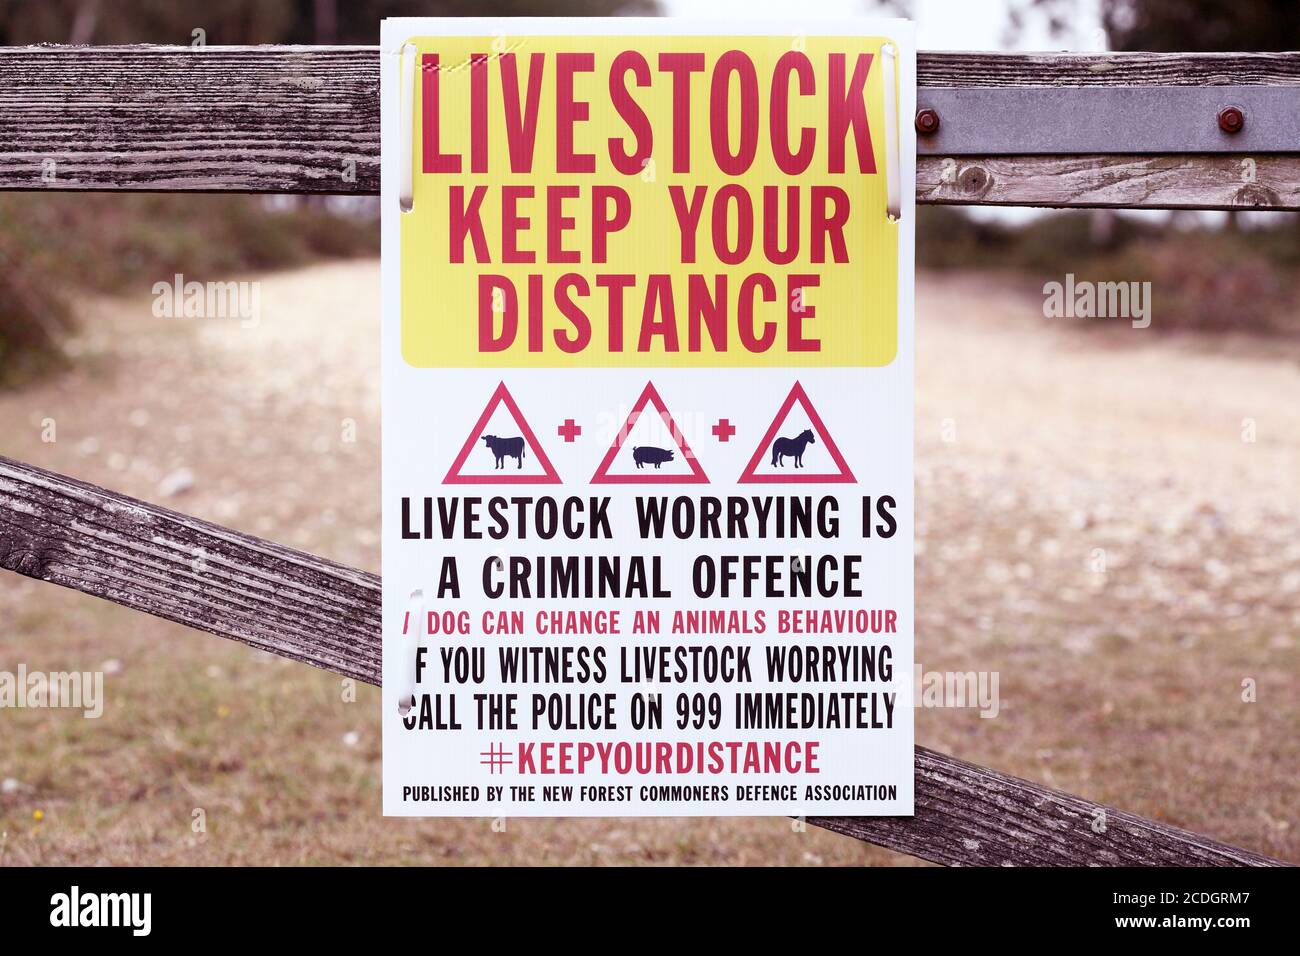 Vieh Halten Sie Ihre Distanz kein Vieh beunruhigende Zeichen Stockfoto